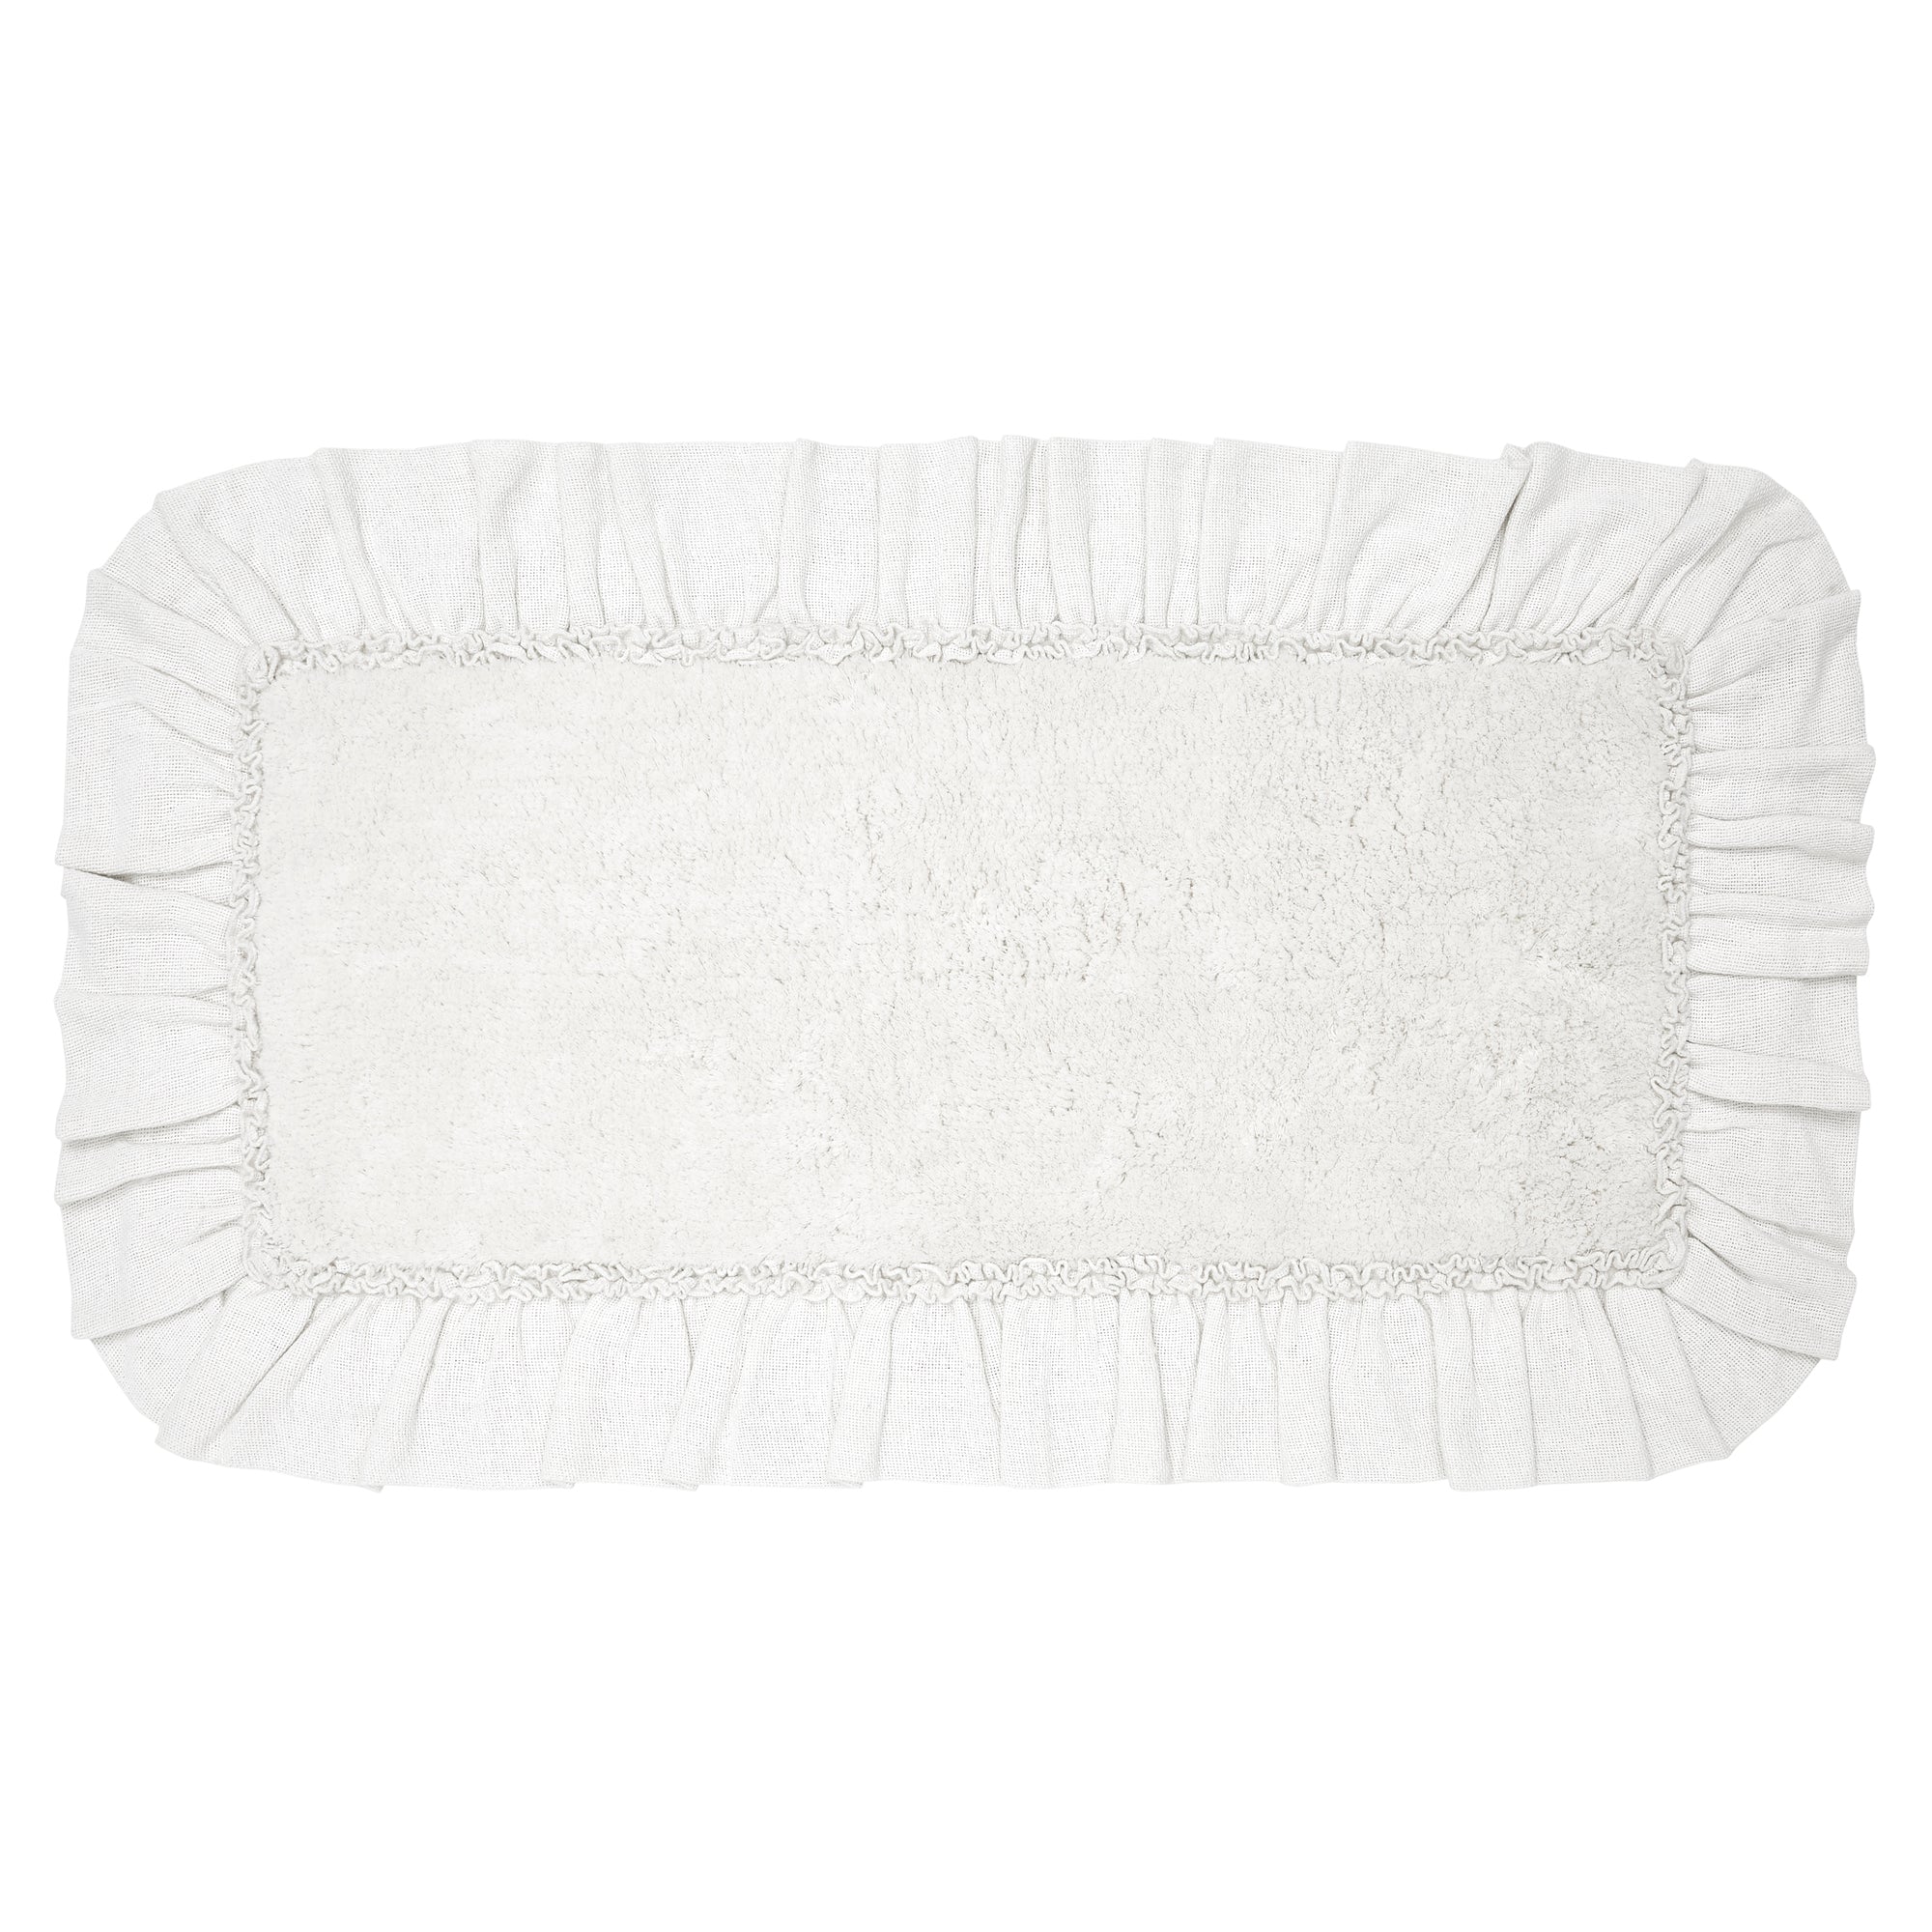 Burlap Antique White Bathmat 27" x 48" VHC Brands